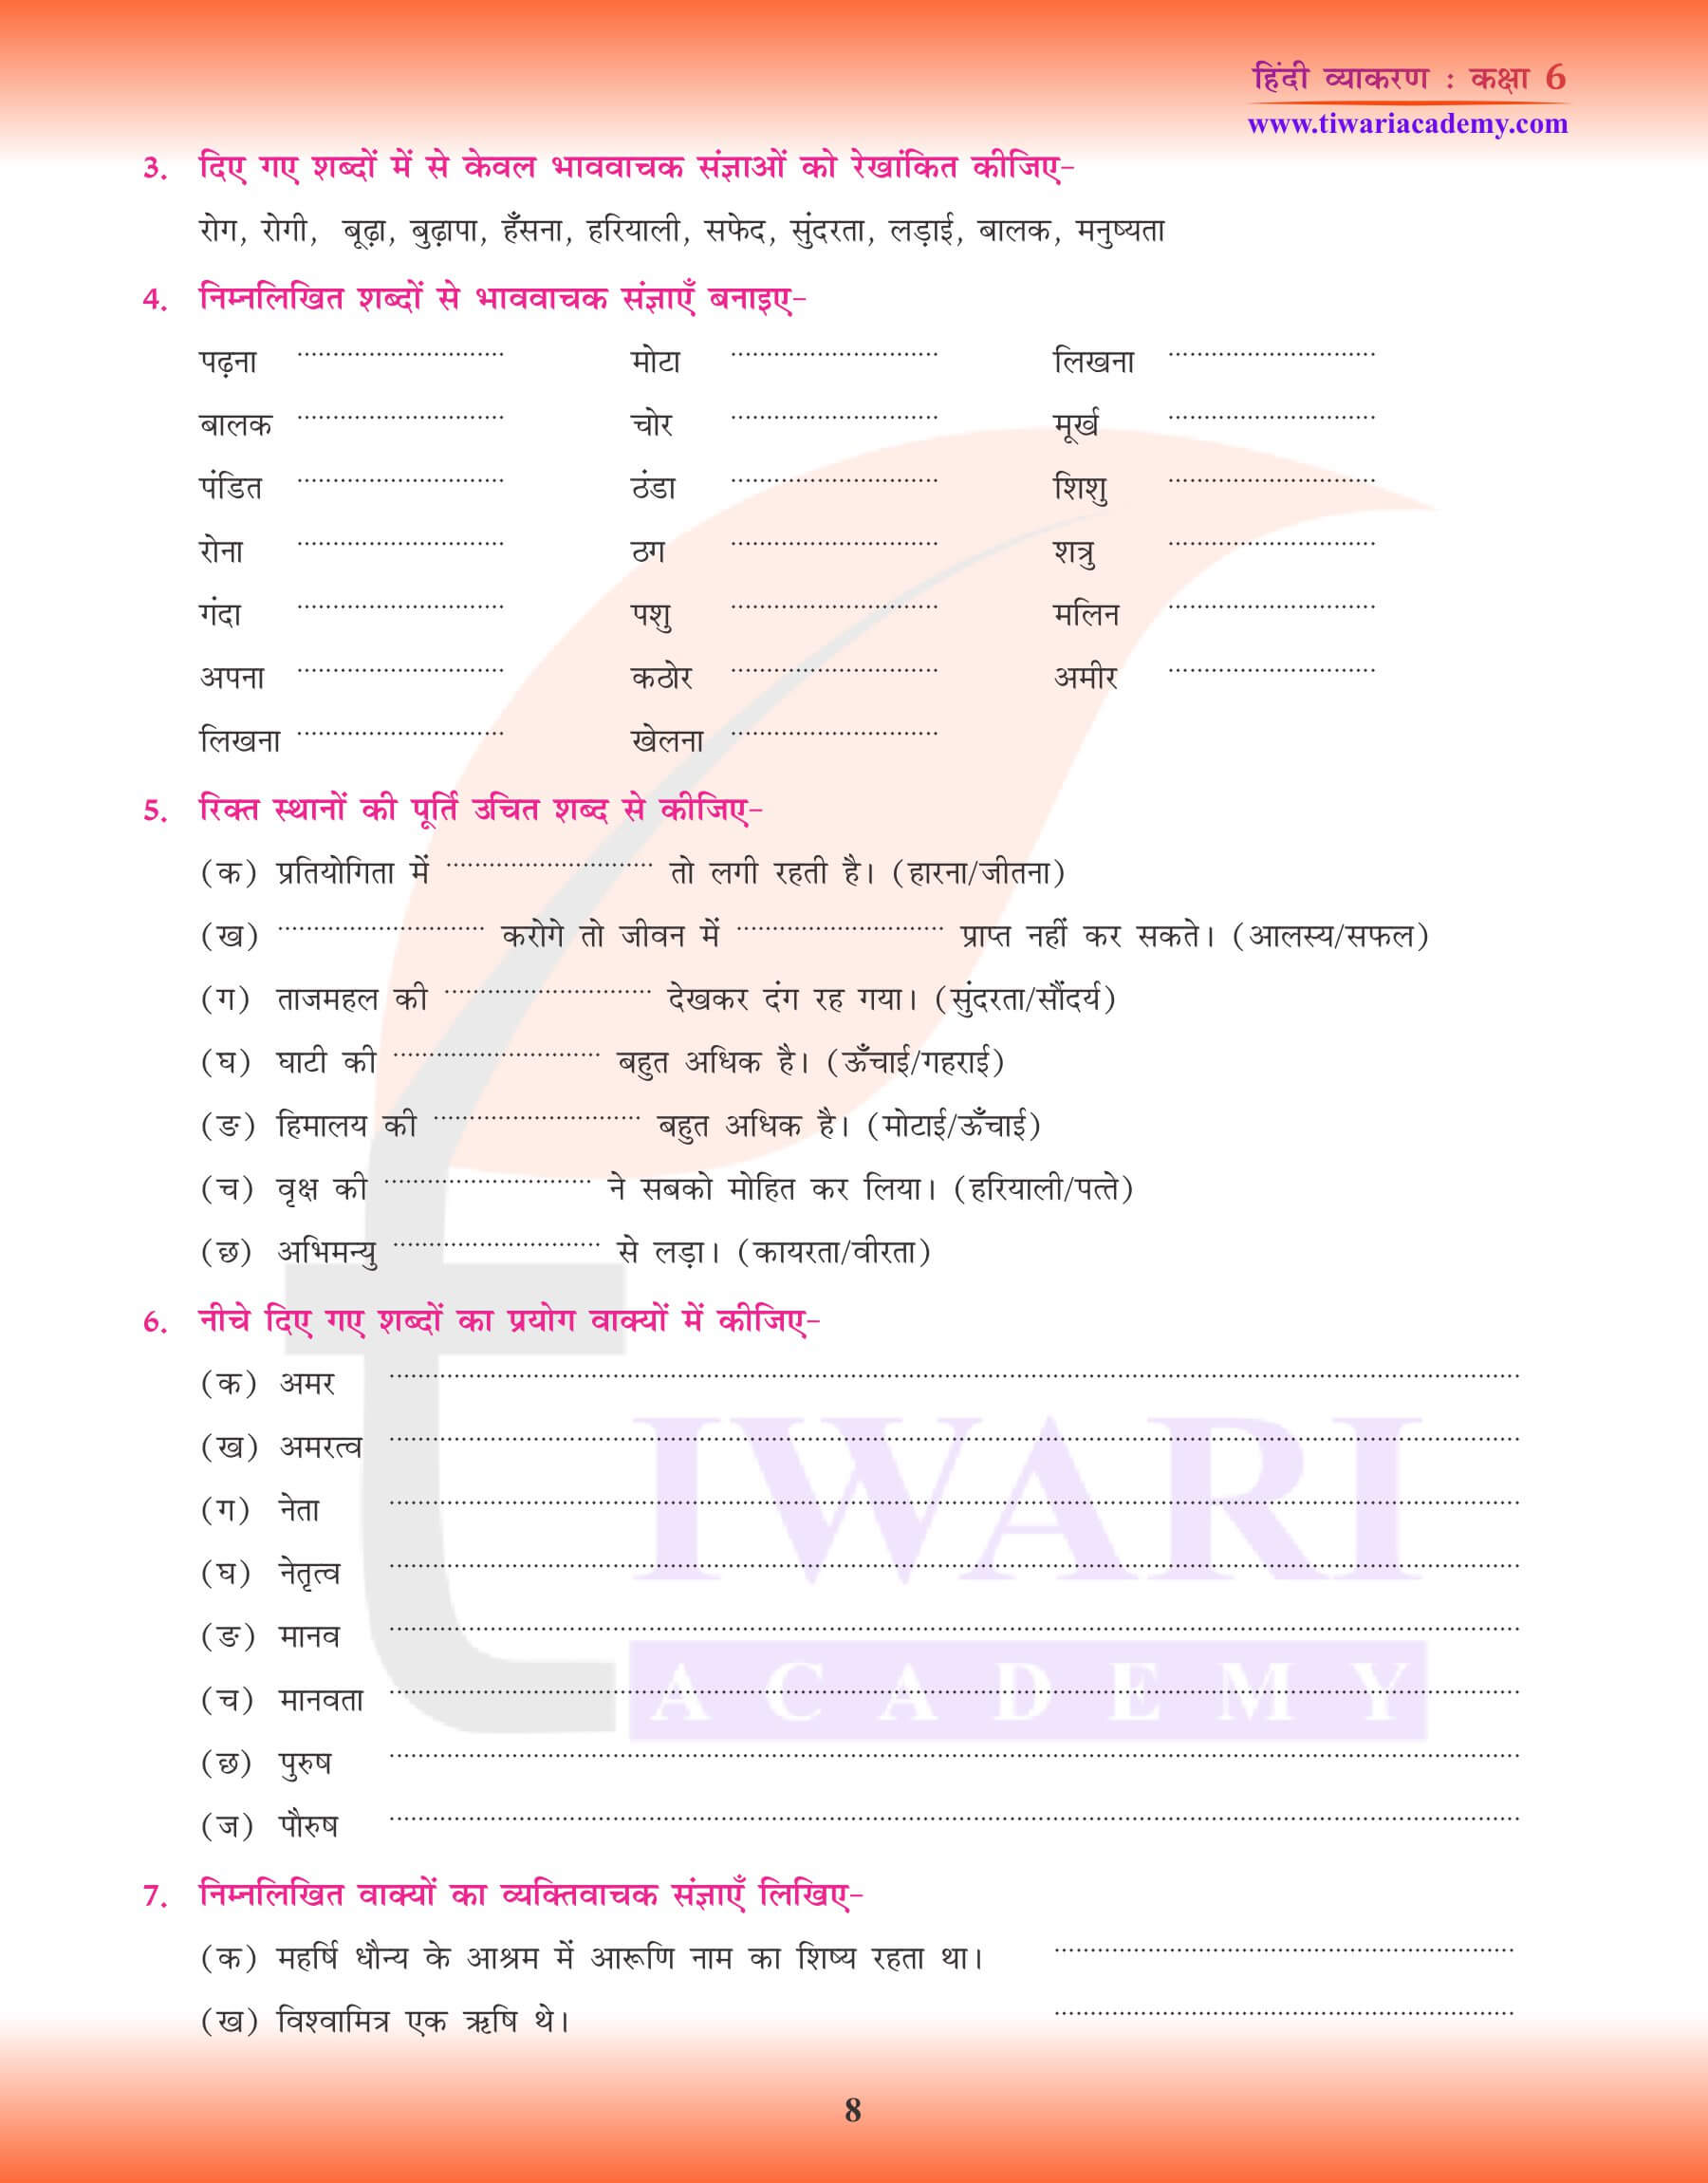 कक्षा 6 हिंदी व्याकरण संज्ञा के लिए अभ्यास